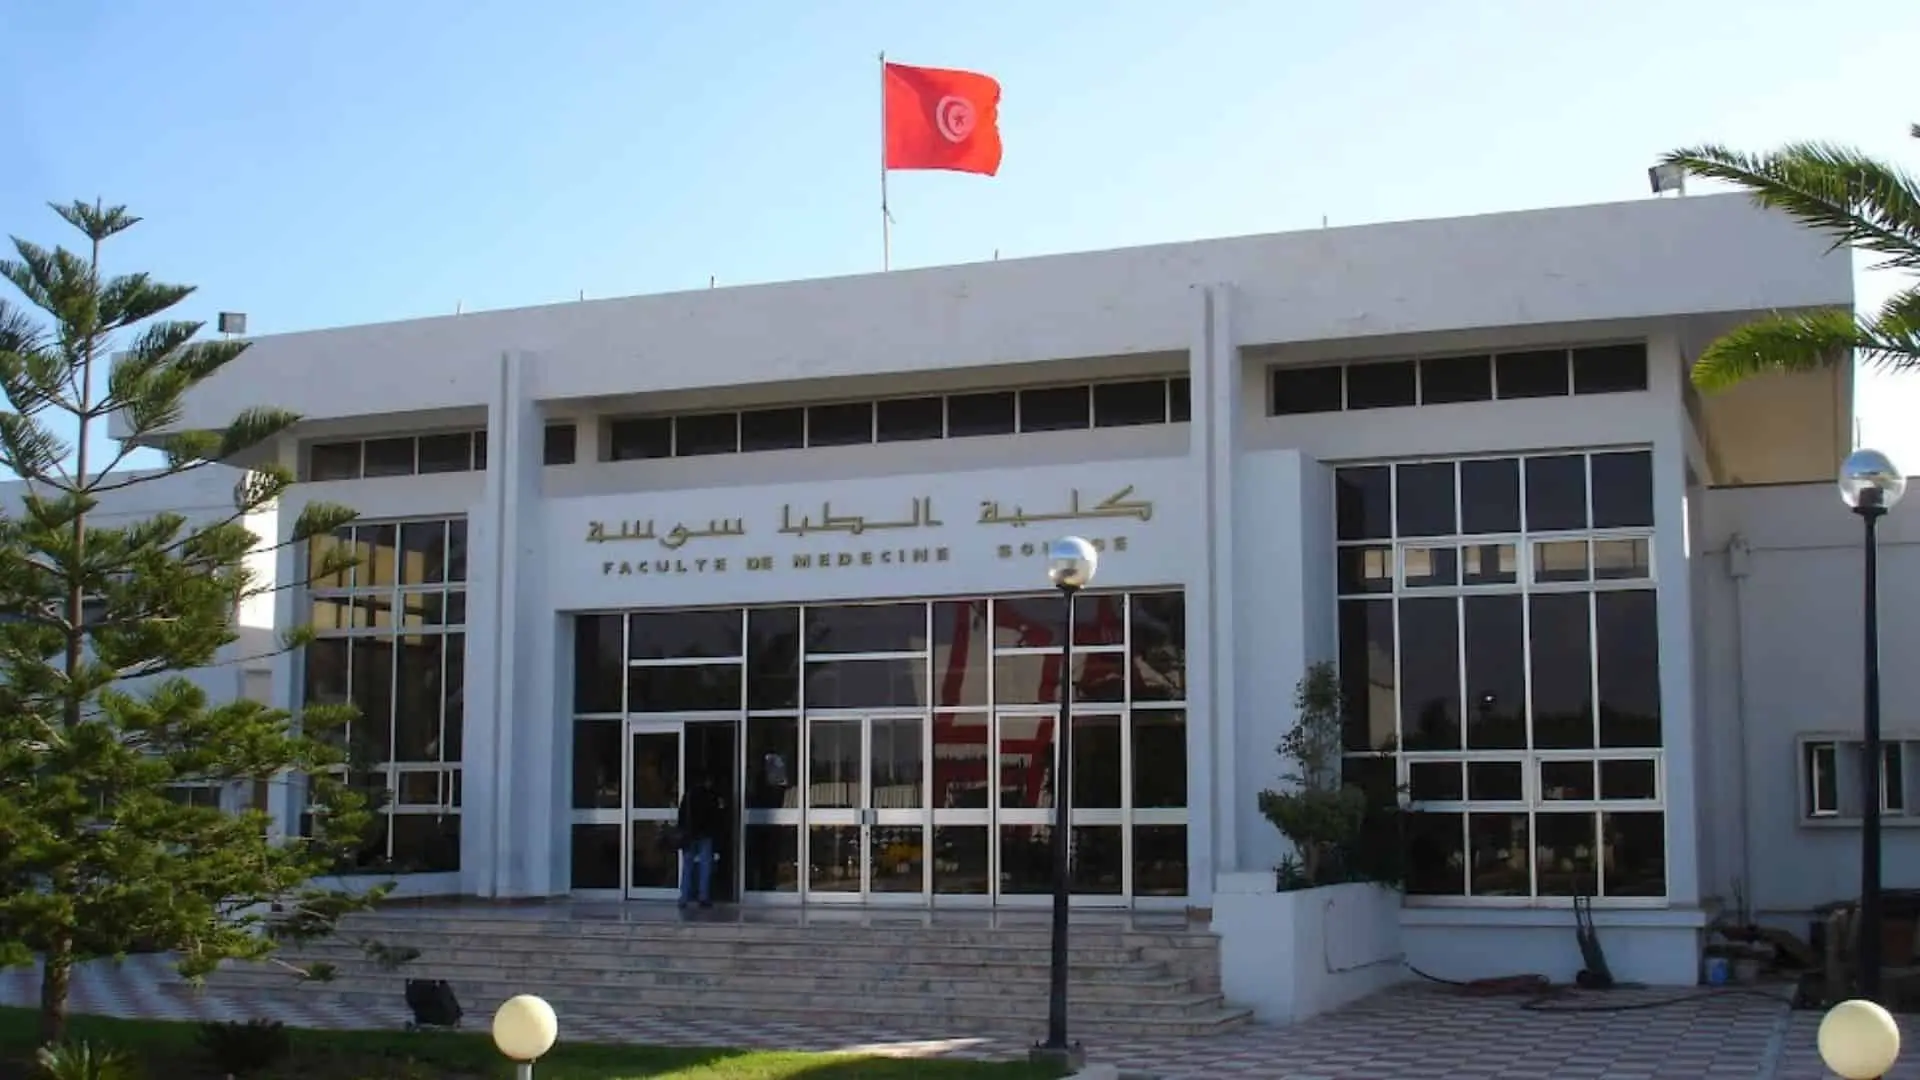 Faculté de Médecine de Sousse (FMS)